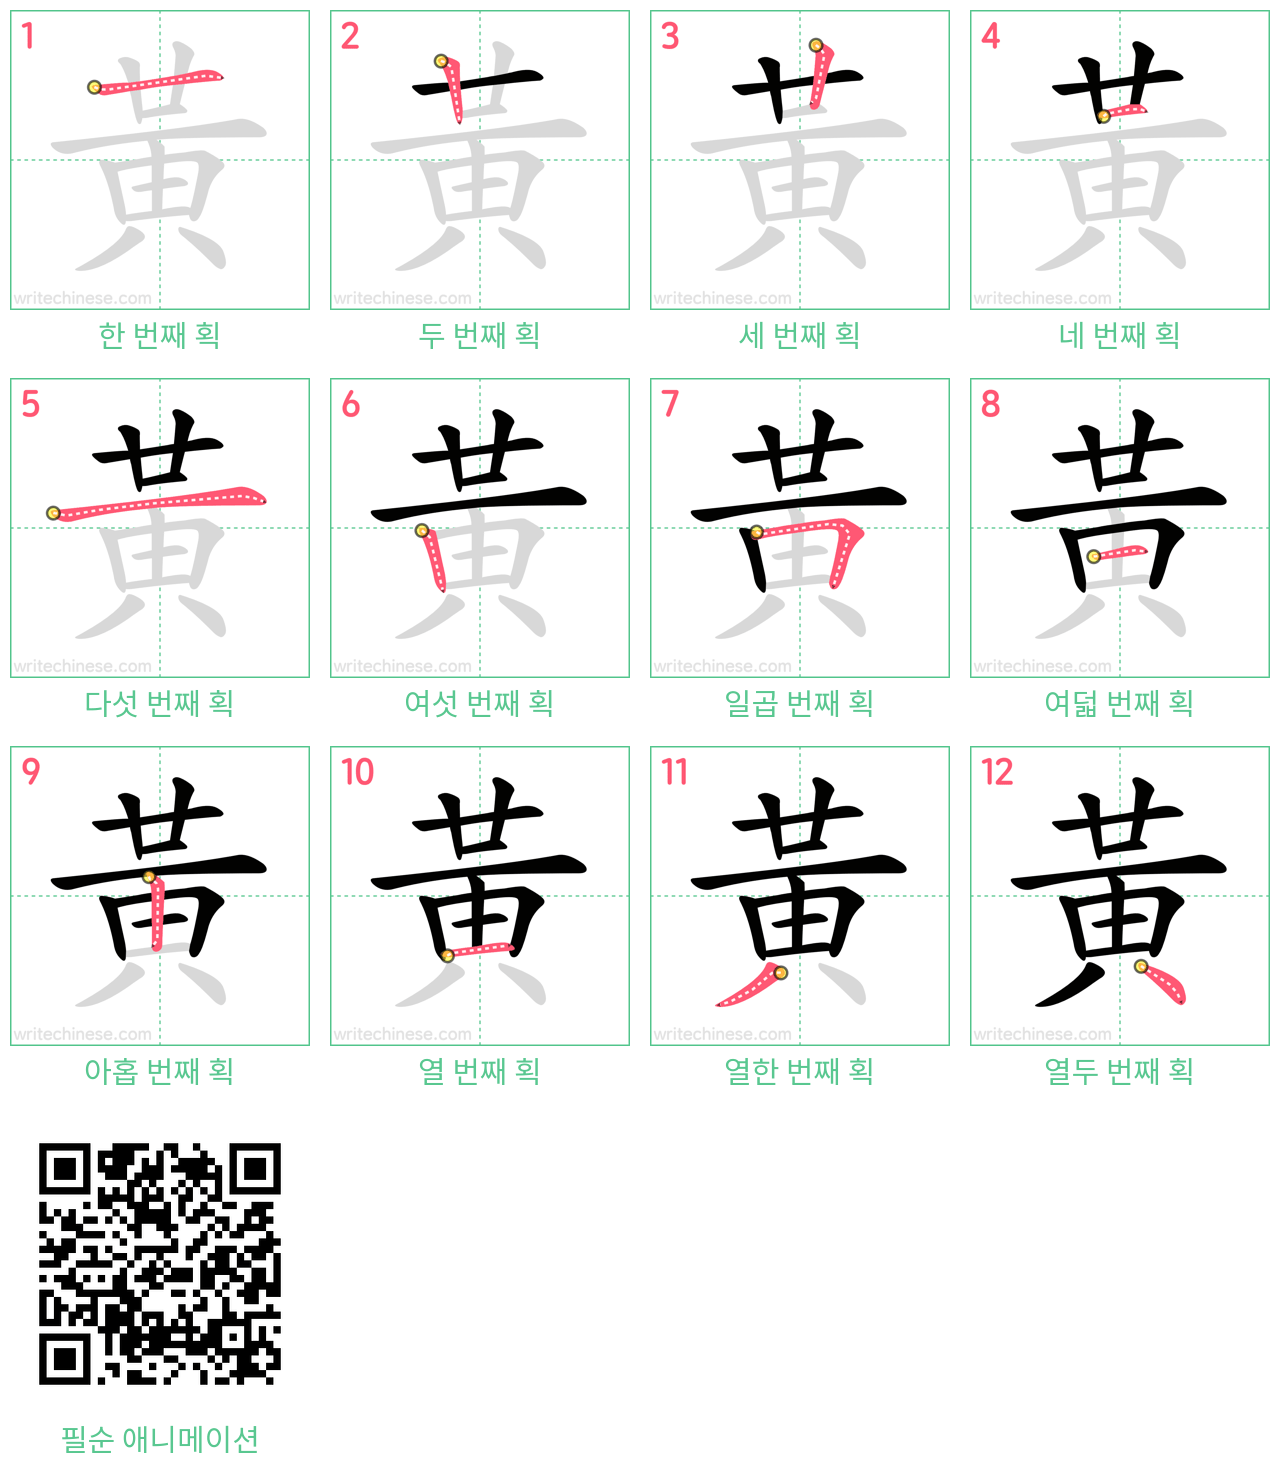 黃 step-by-step stroke order diagrams